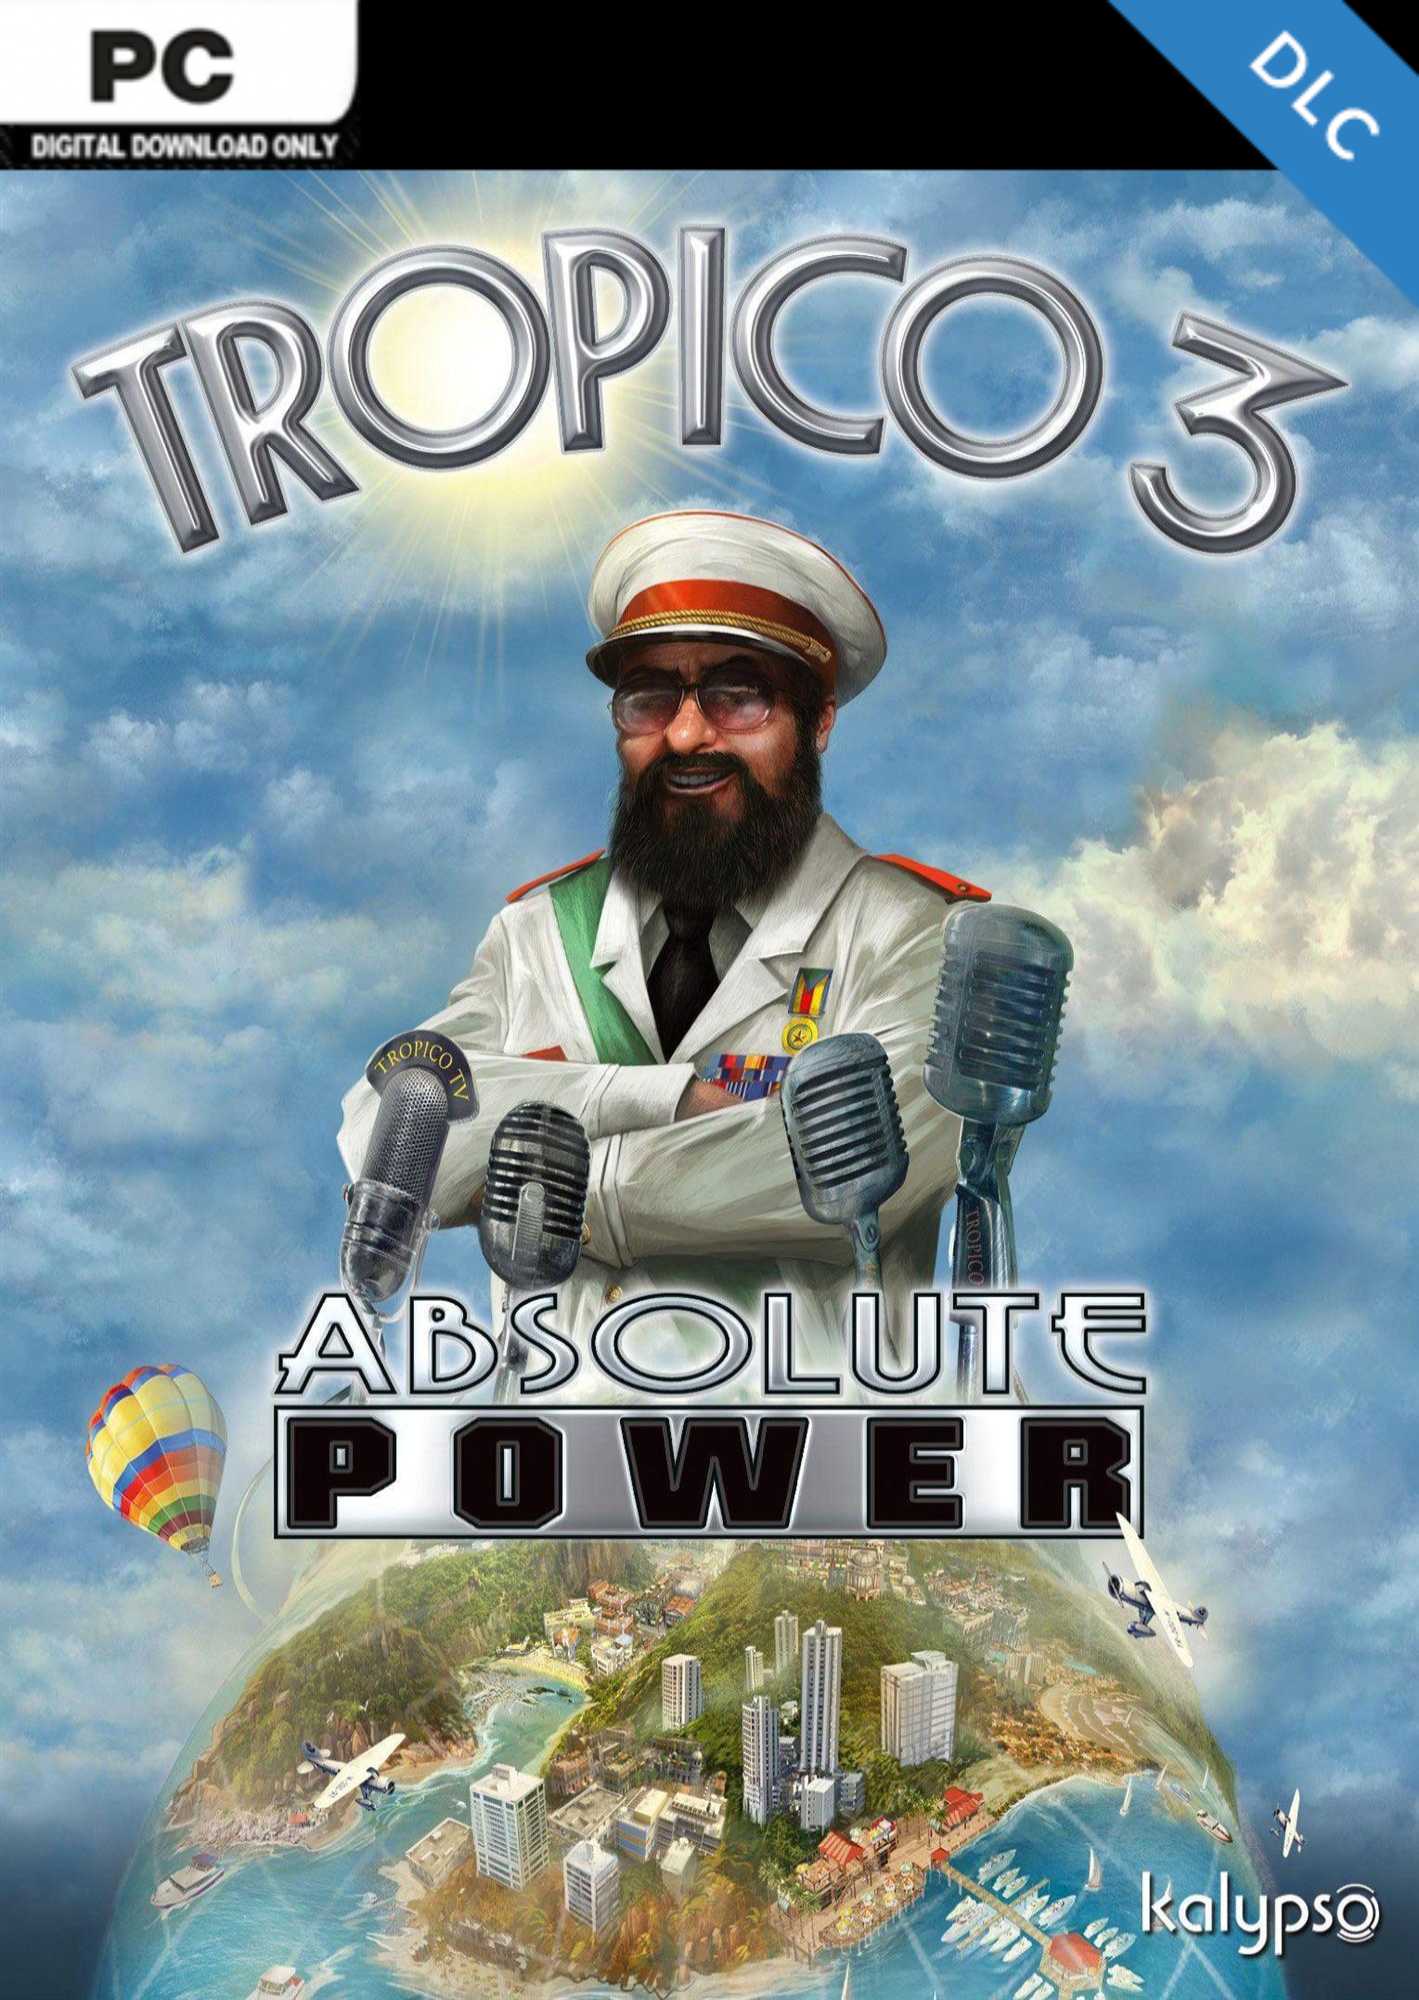 Tropico 3 Absolute Power PC - DLC cover